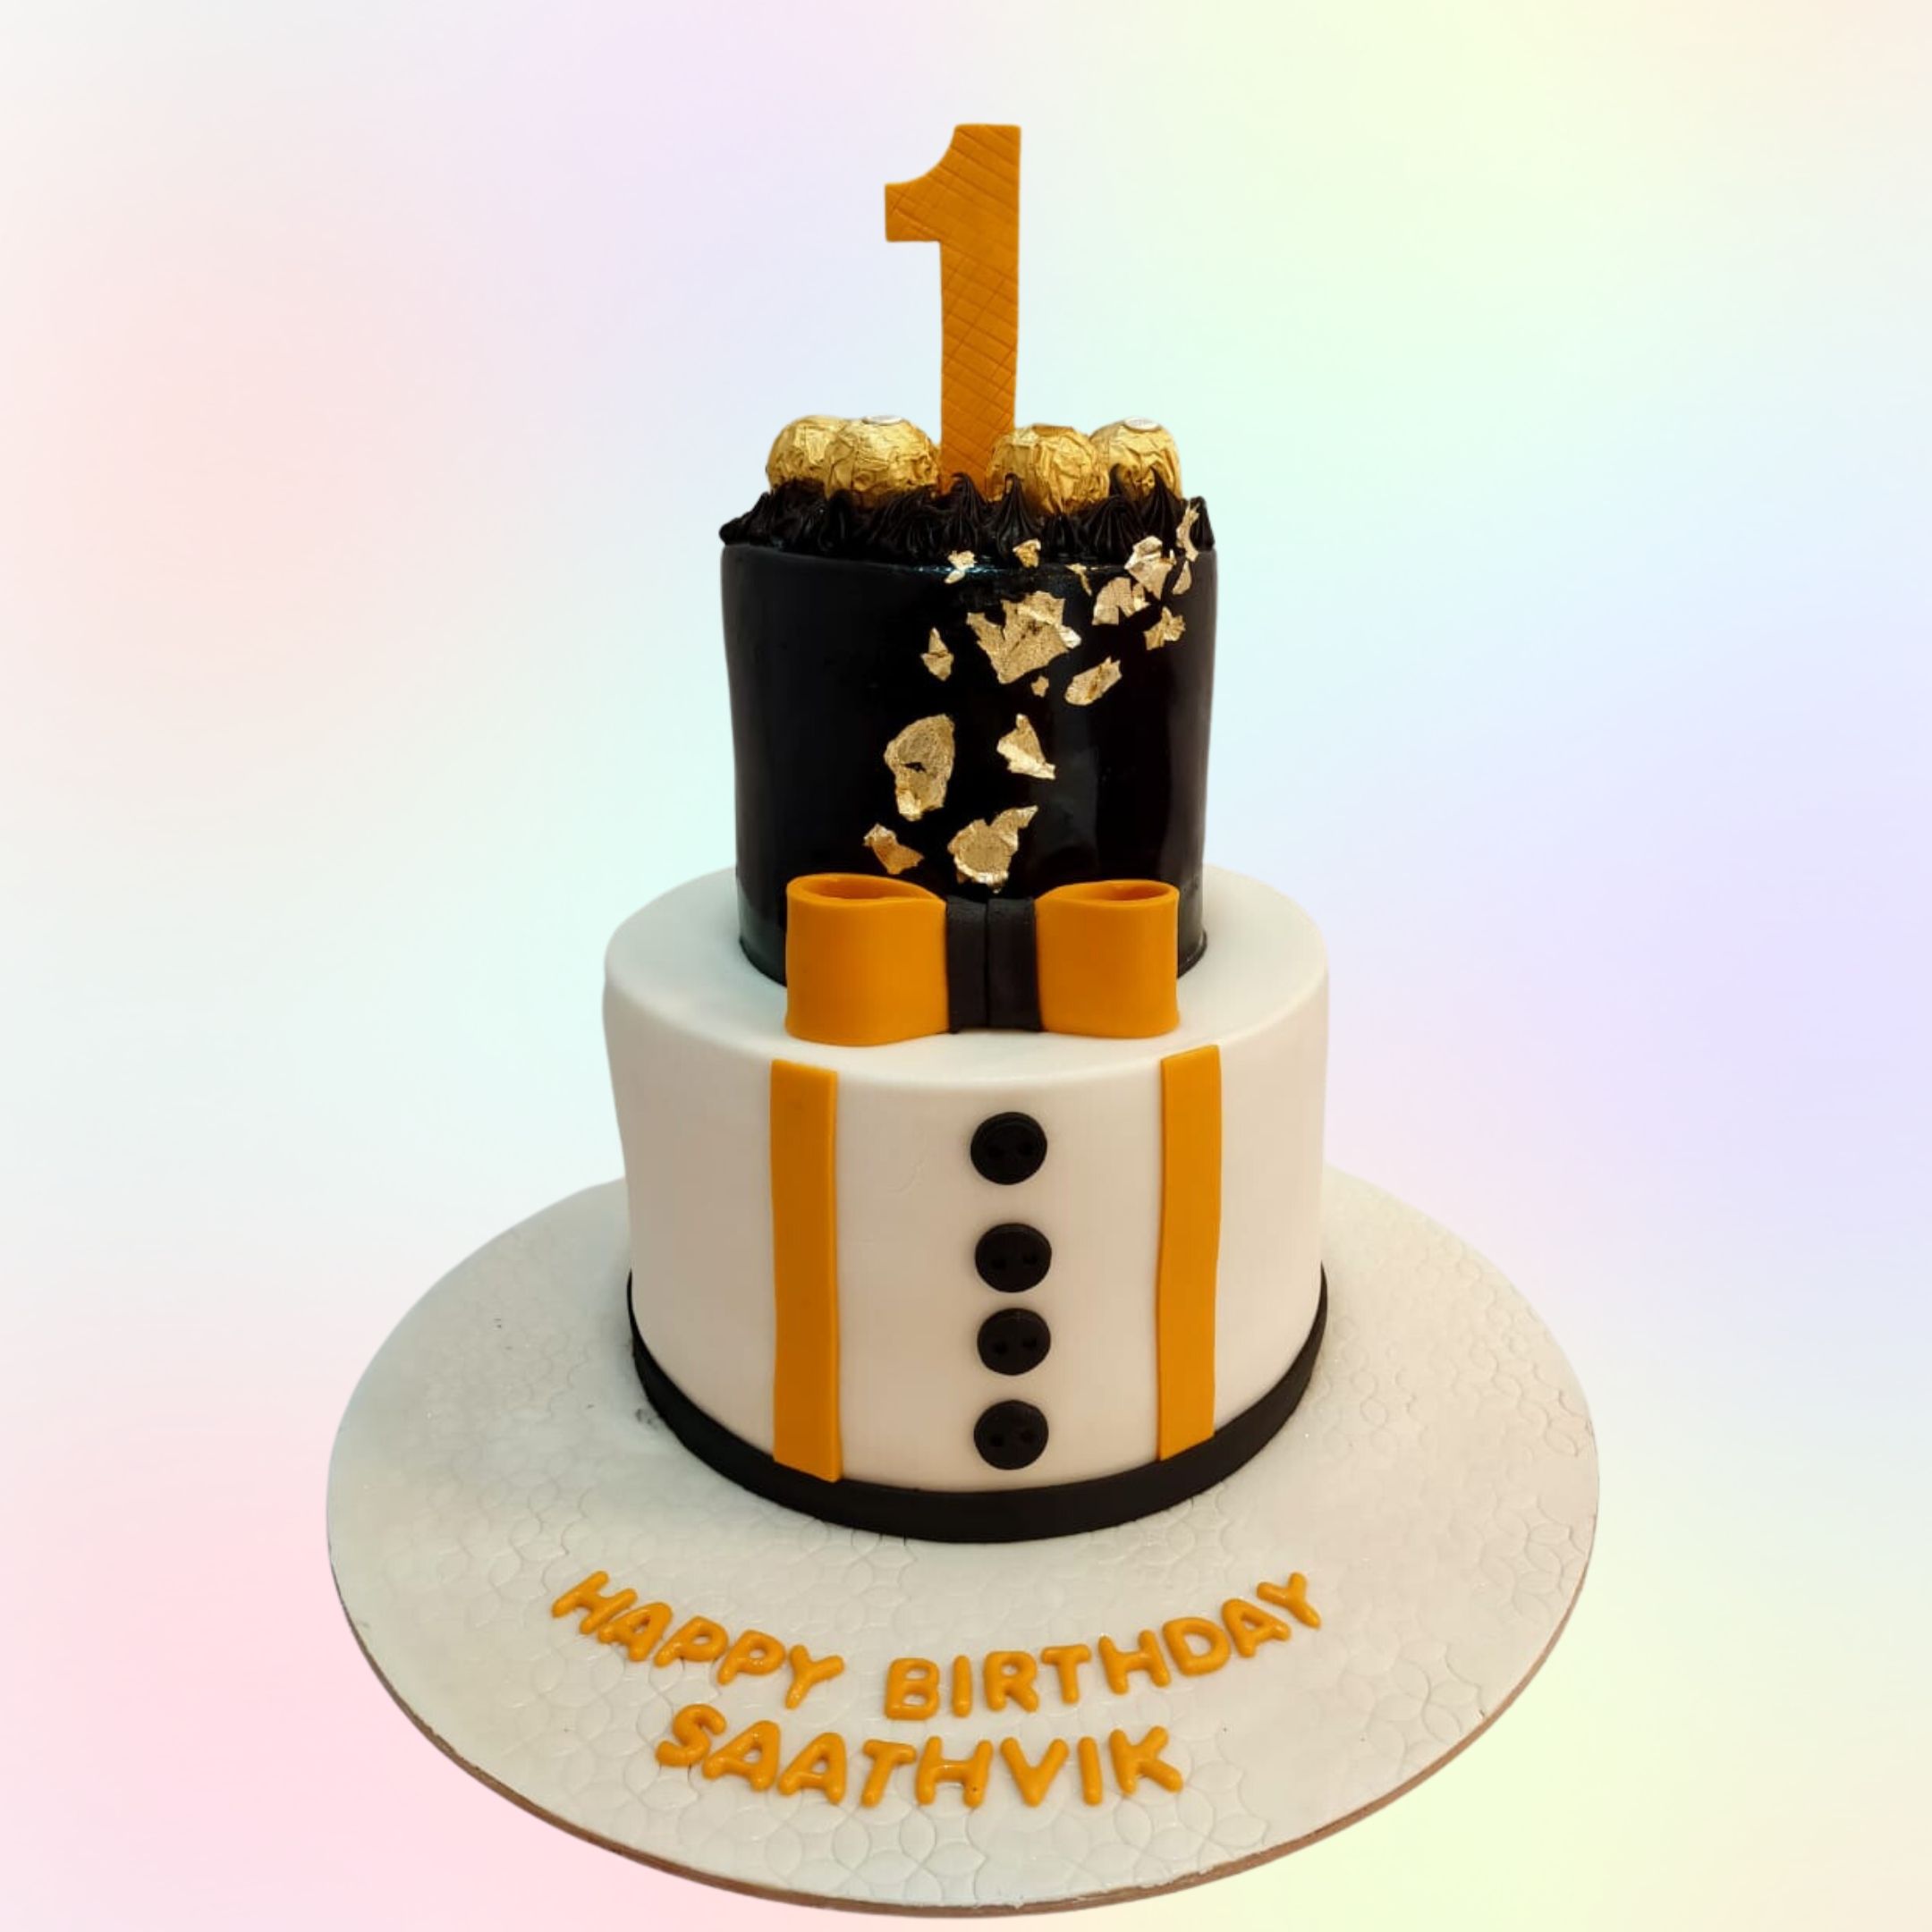 Yes Bank Theme Cake |Manager Theme Cake| #mangerthemecake #yesbankthemecake  #cake #homemade - YouTube